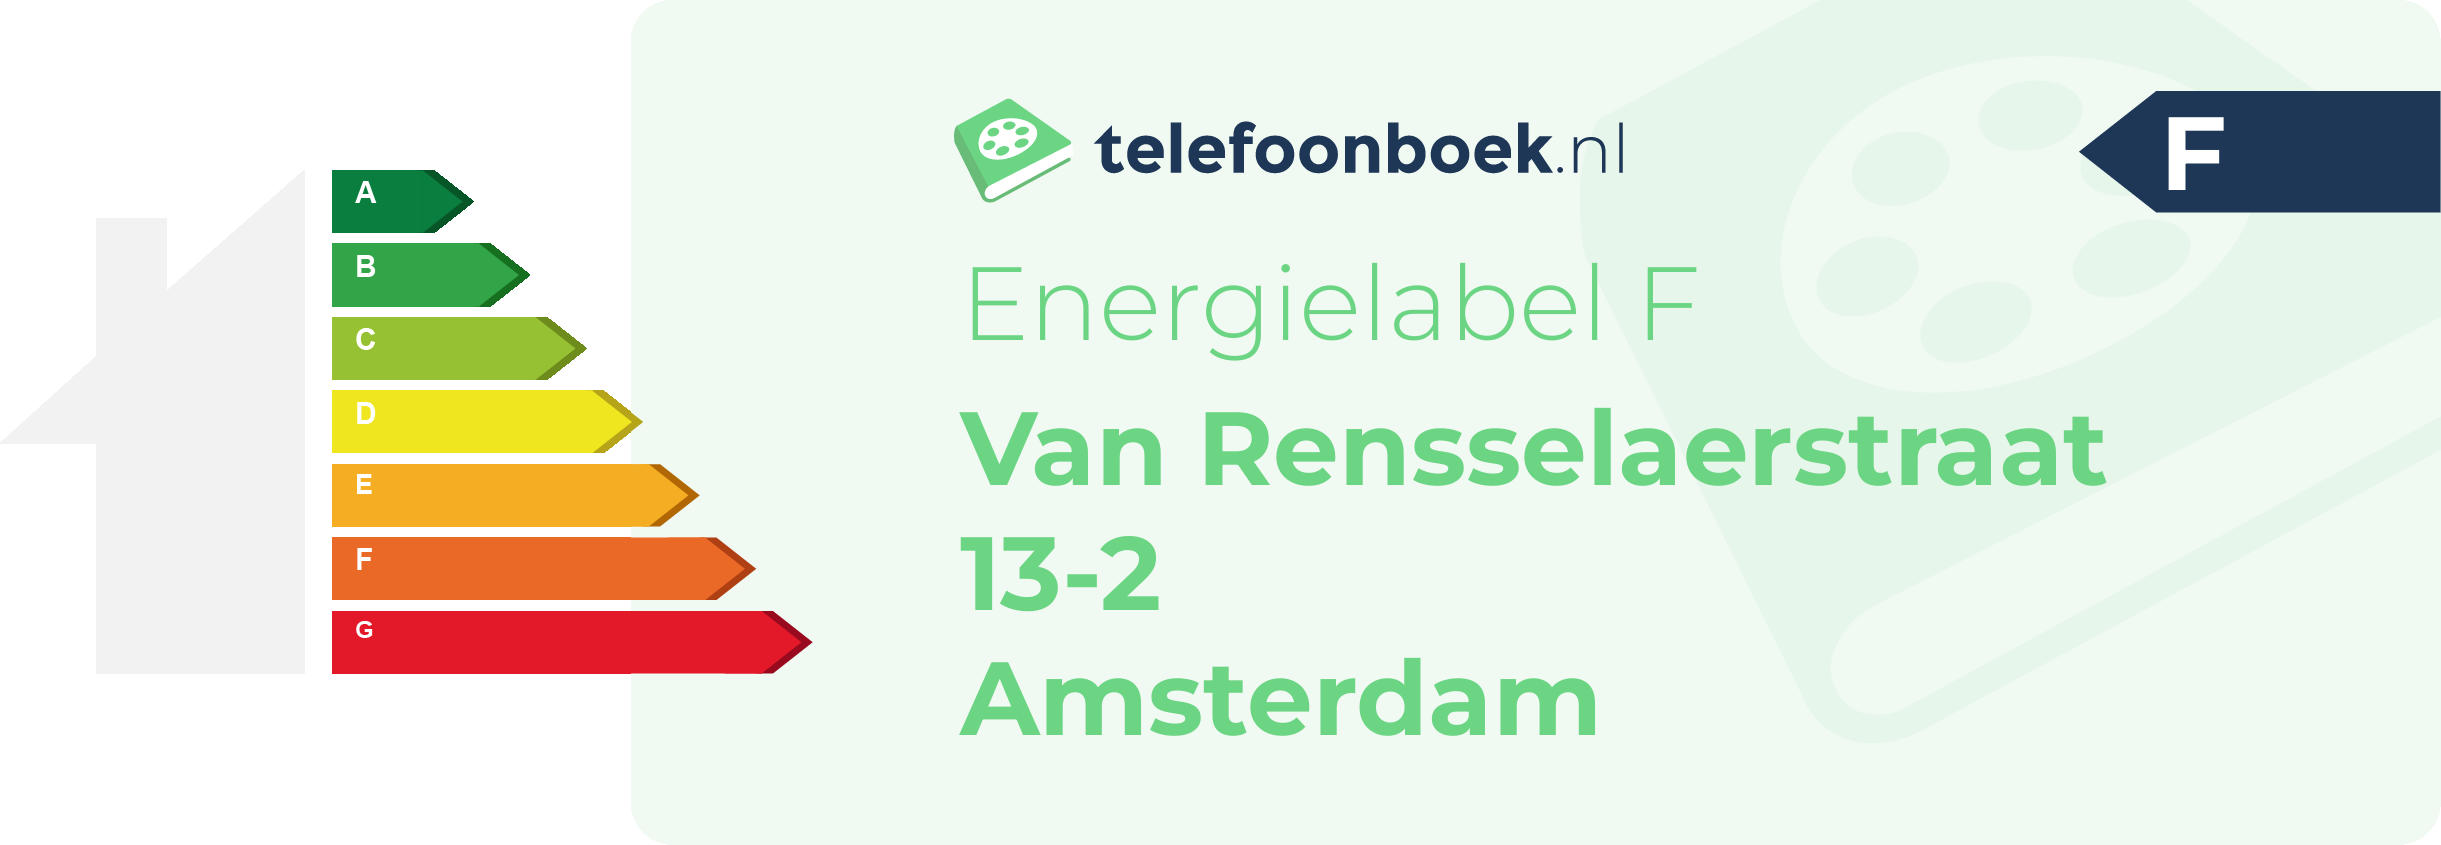 Energielabel Van Rensselaerstraat 13-2 Amsterdam